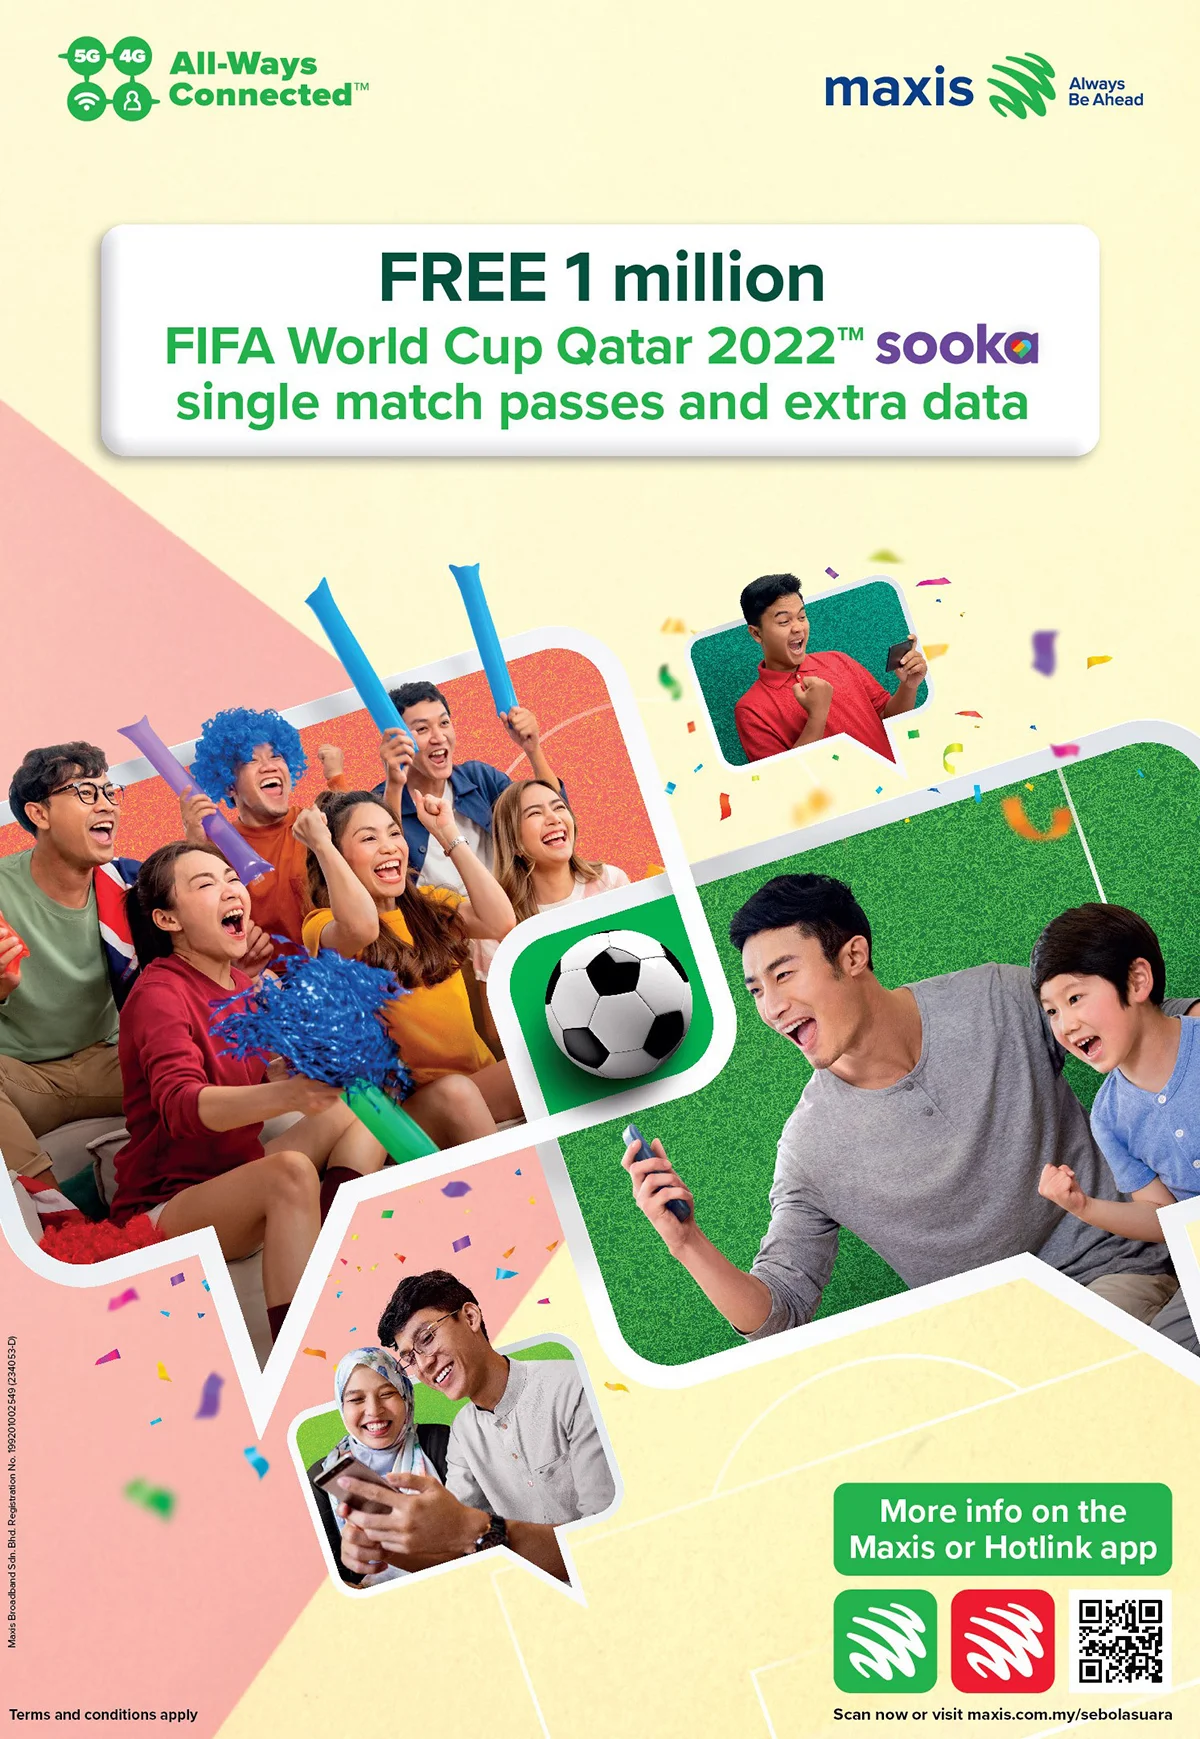 Maxis World Cup - Free 1 mil sooka